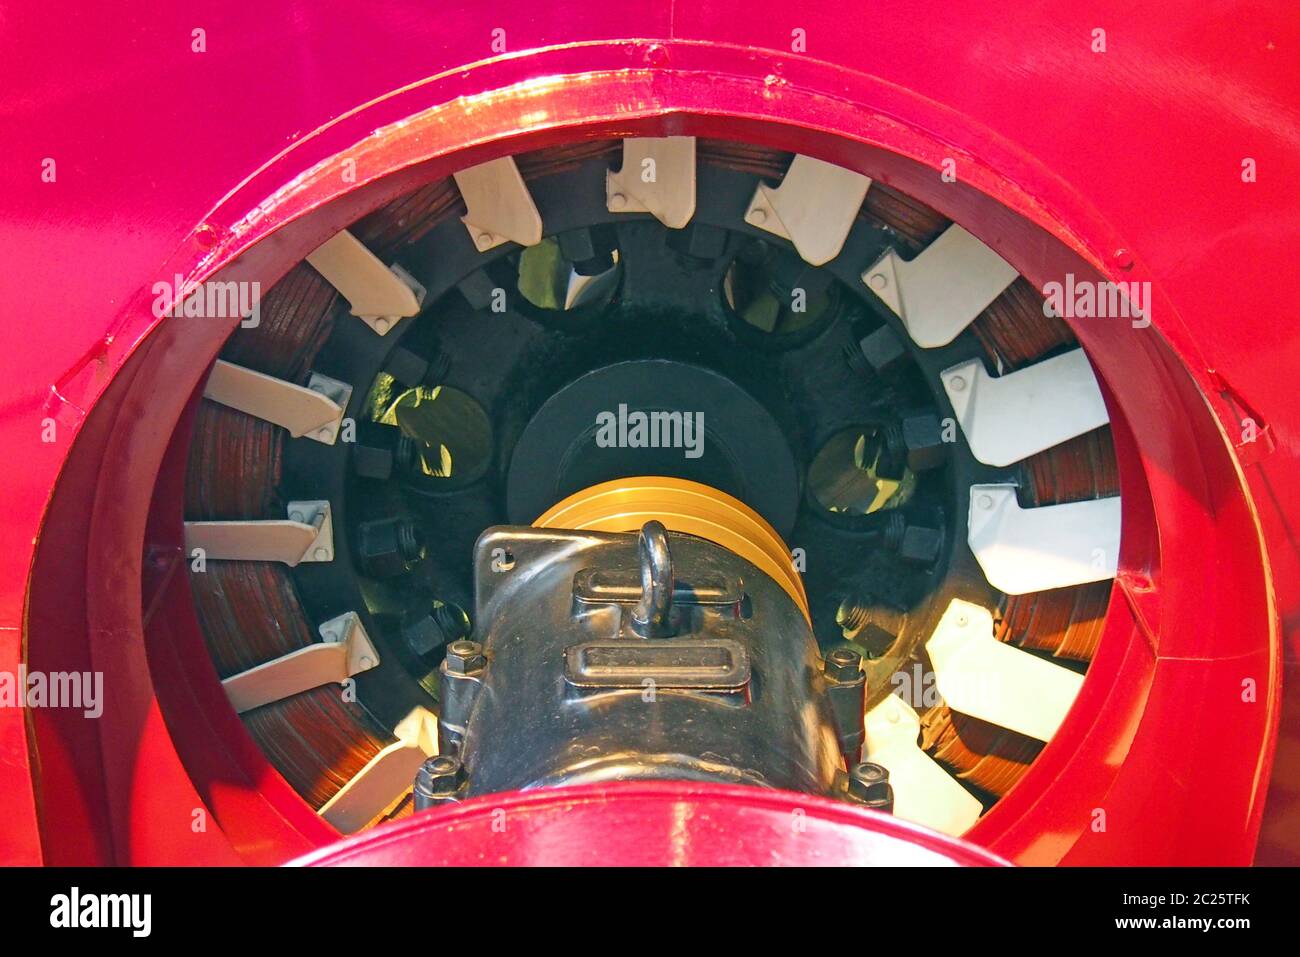 un primer plano del eje de accionamiento y las bobinas de un gran generador industrial rojo Foto de stock